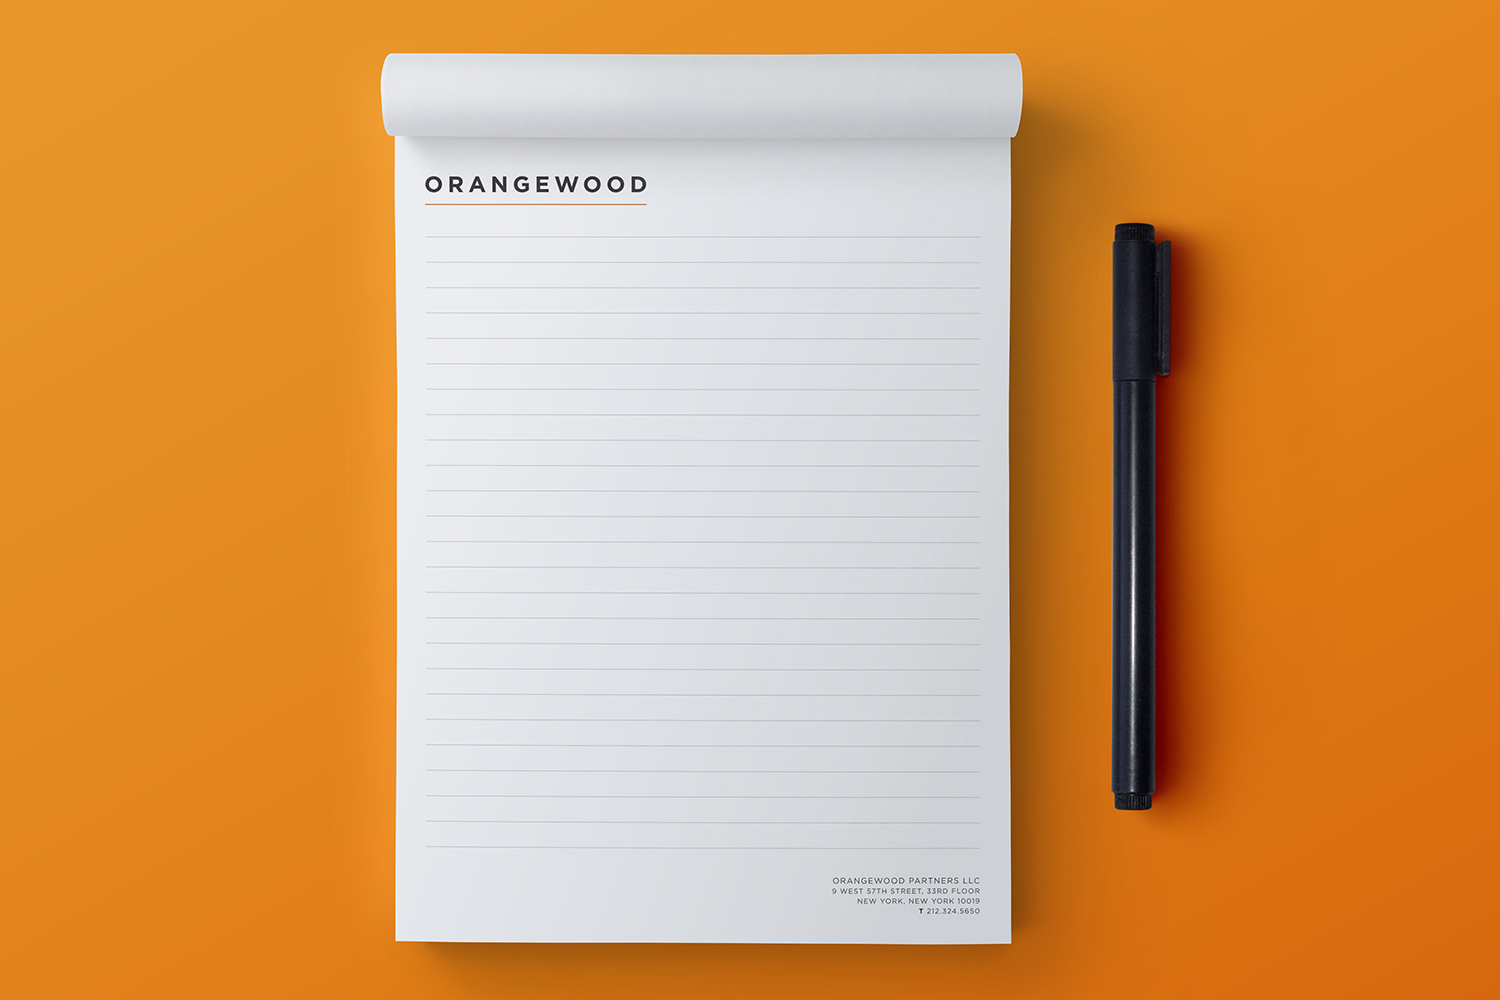 Logos-Orangewood_1.jpg